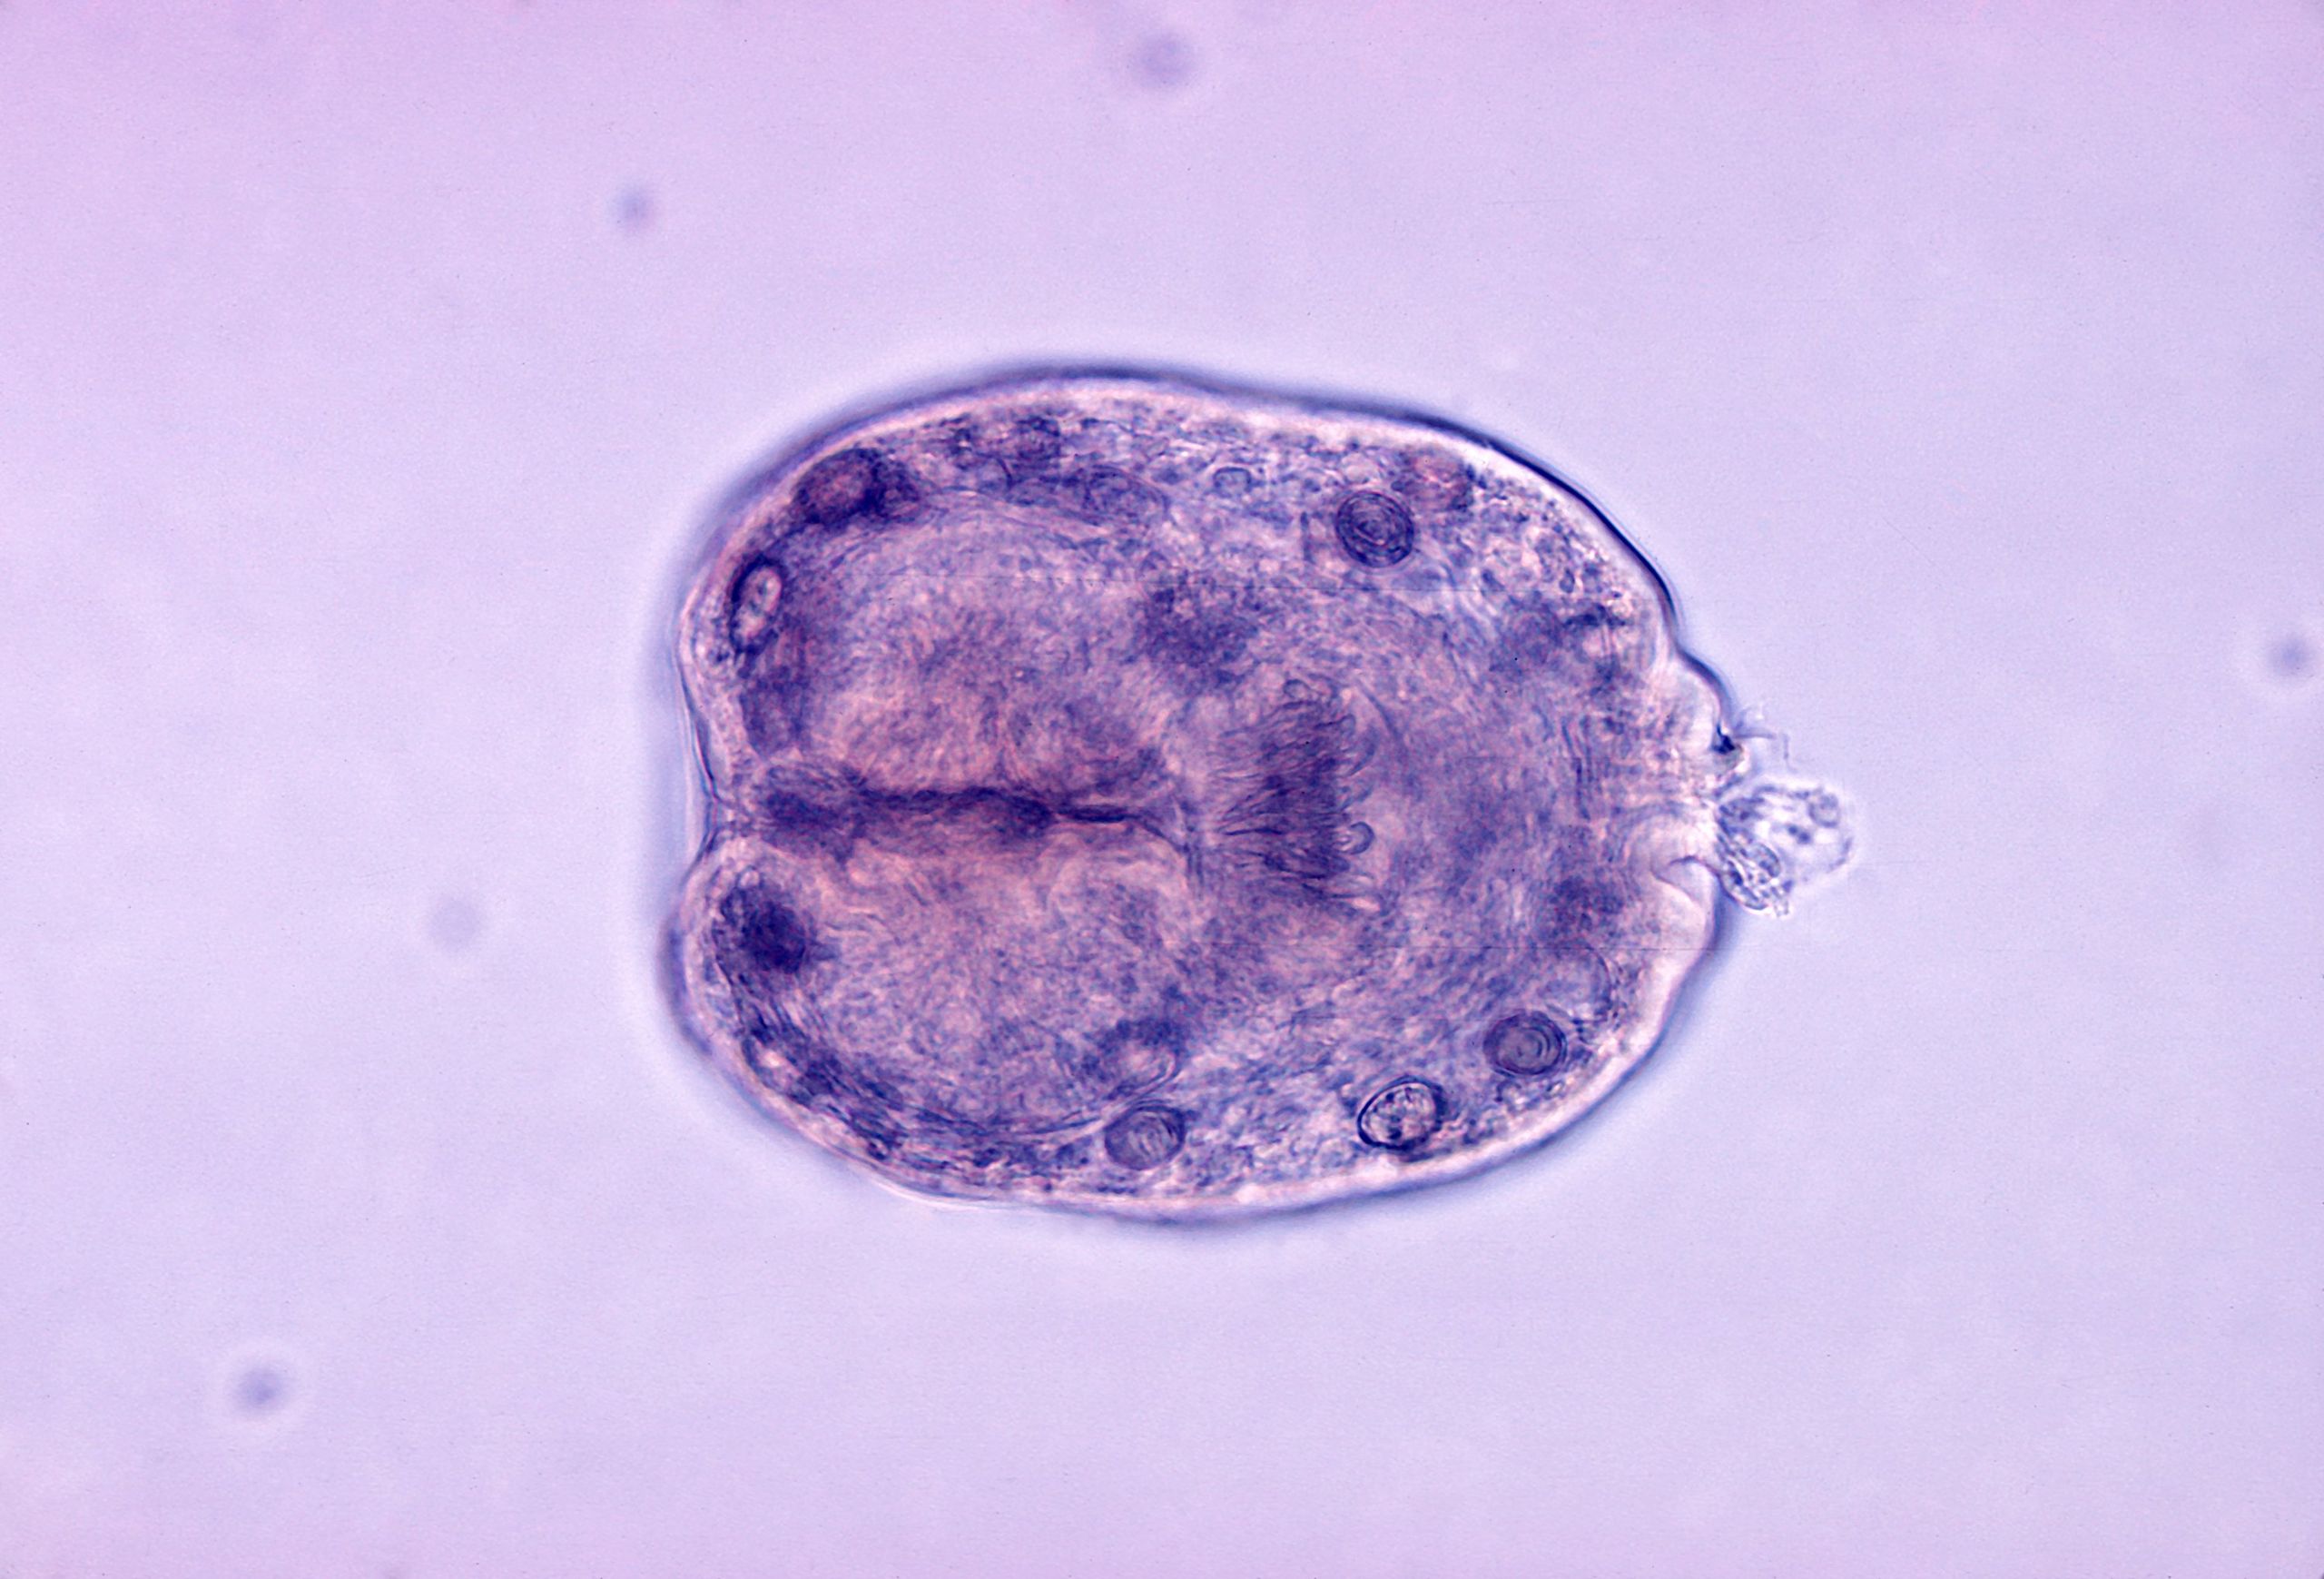 File:Echinococcus granulosus scolex.jpg